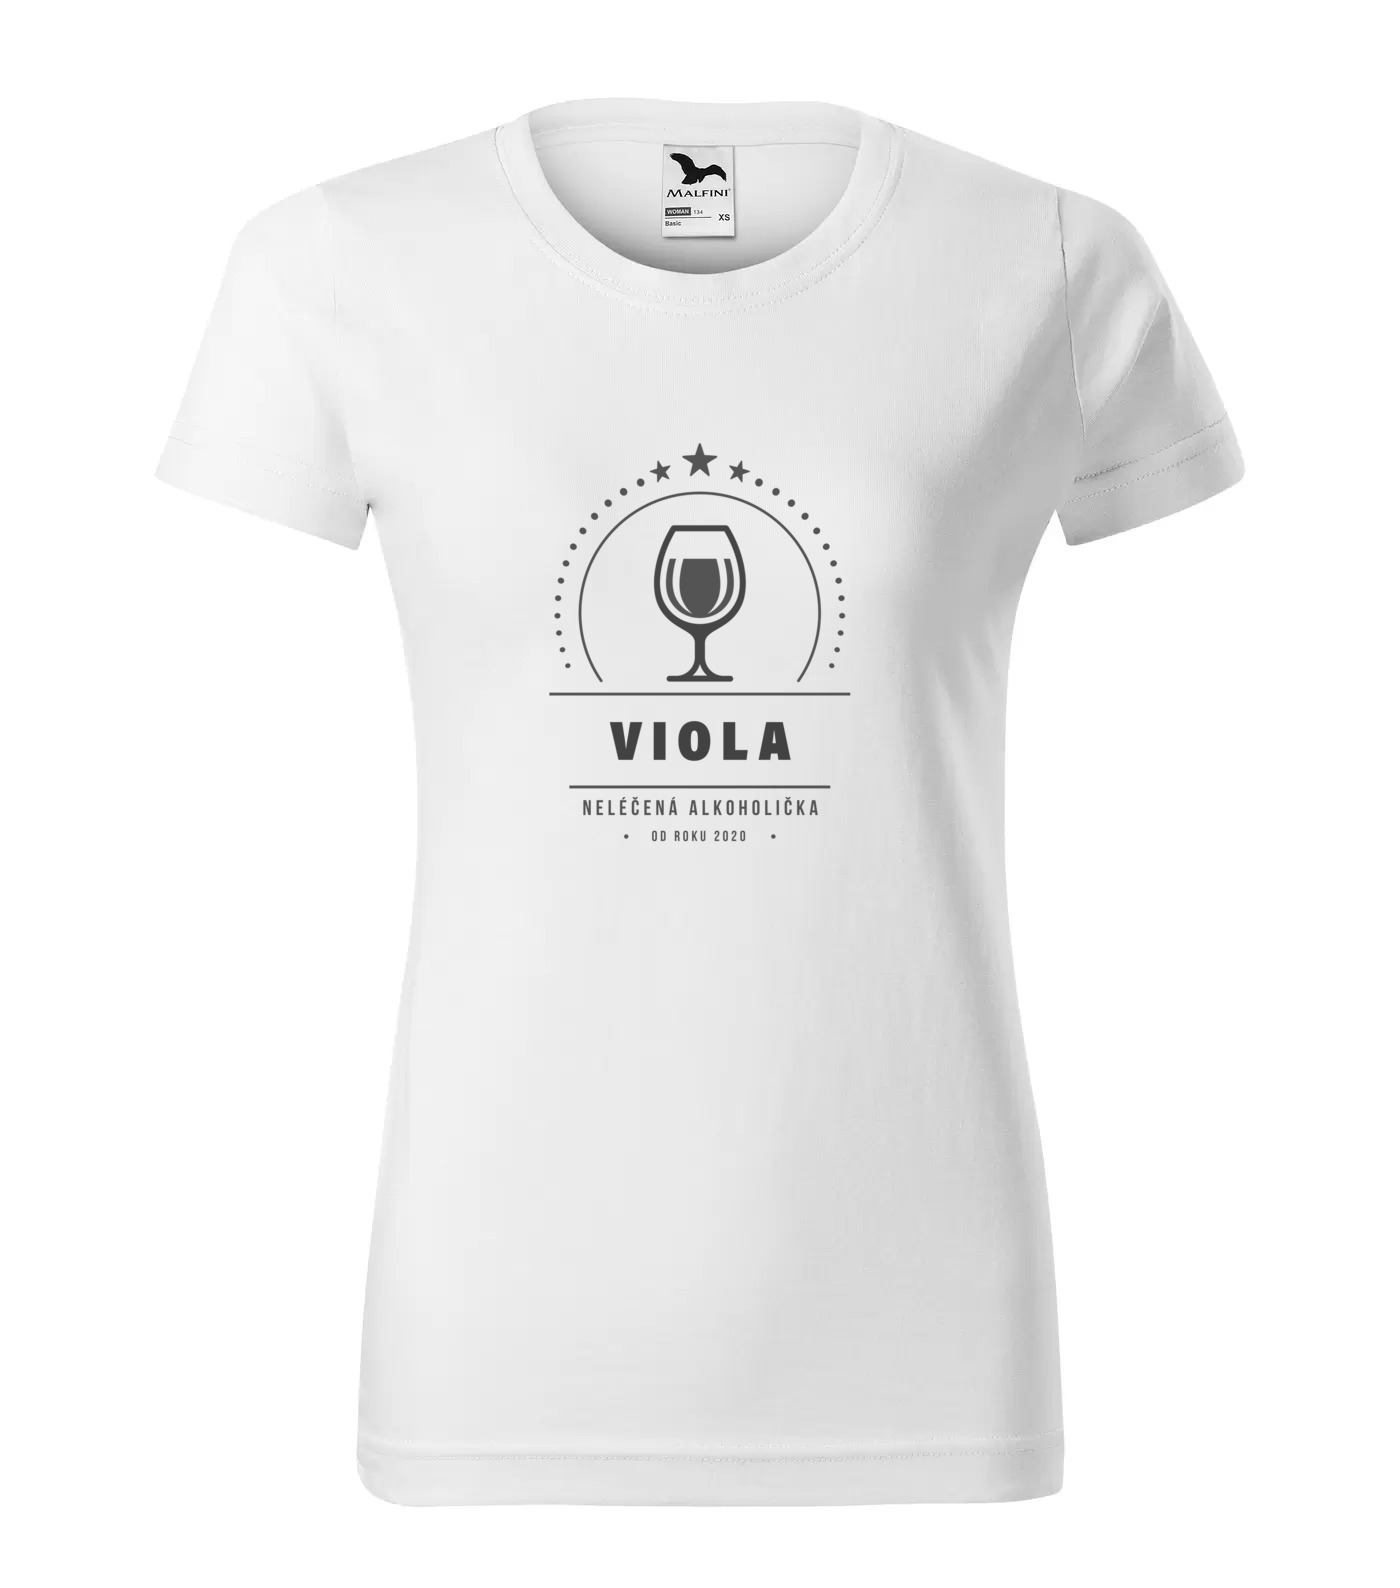 Tričko Alkoholička Viola